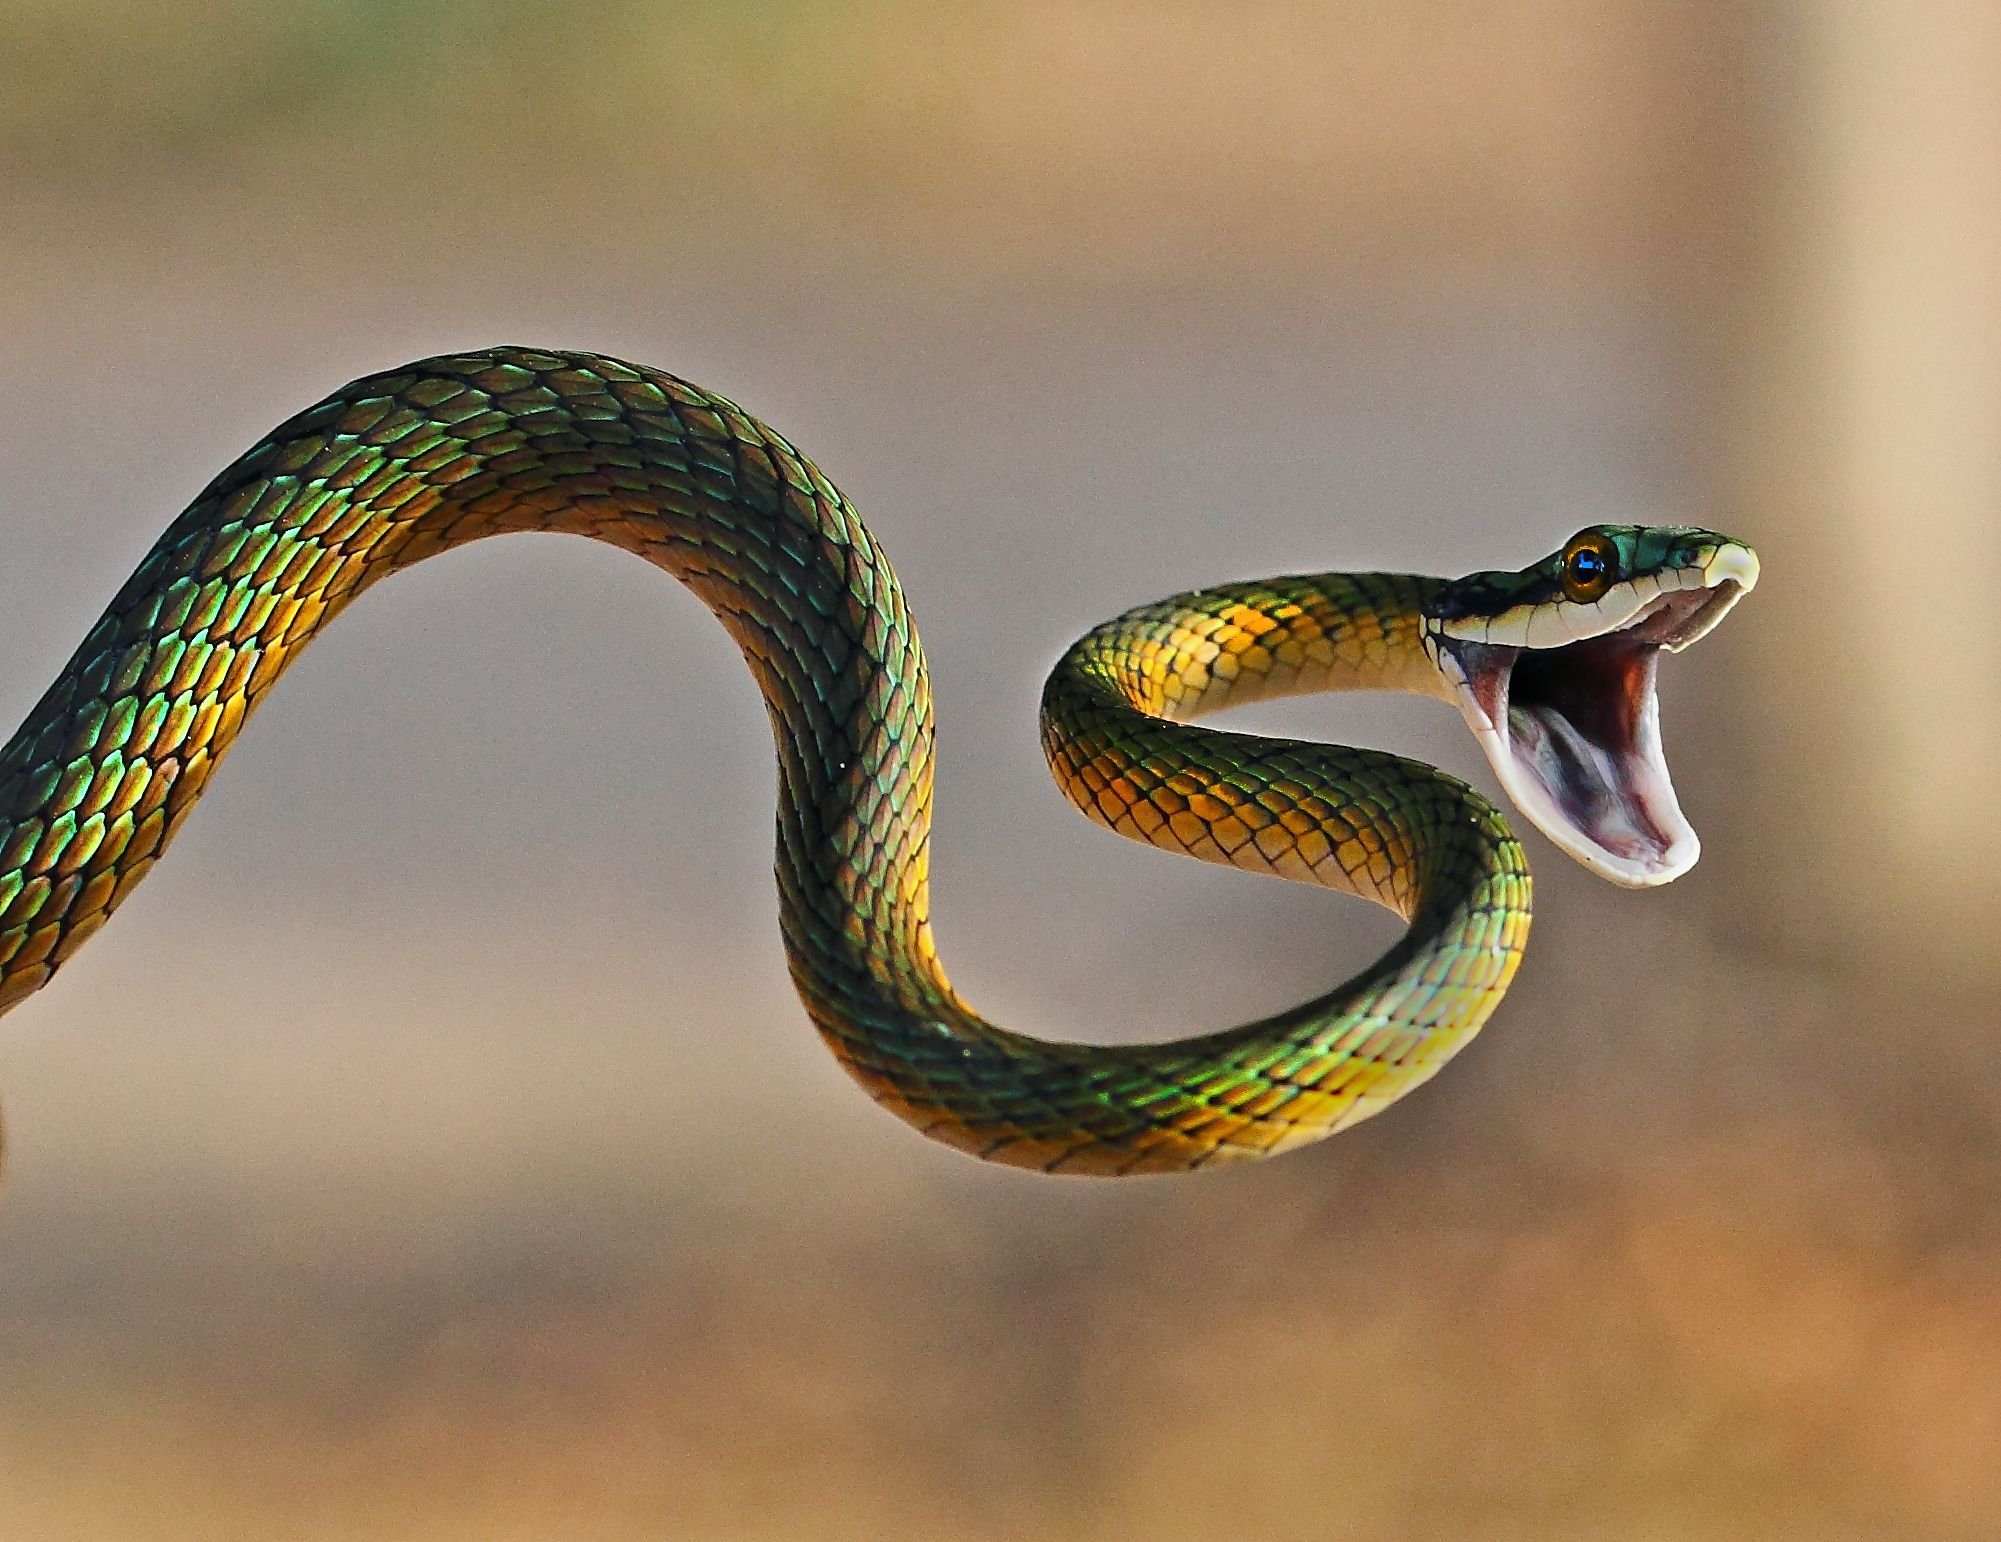 Нападение змеи